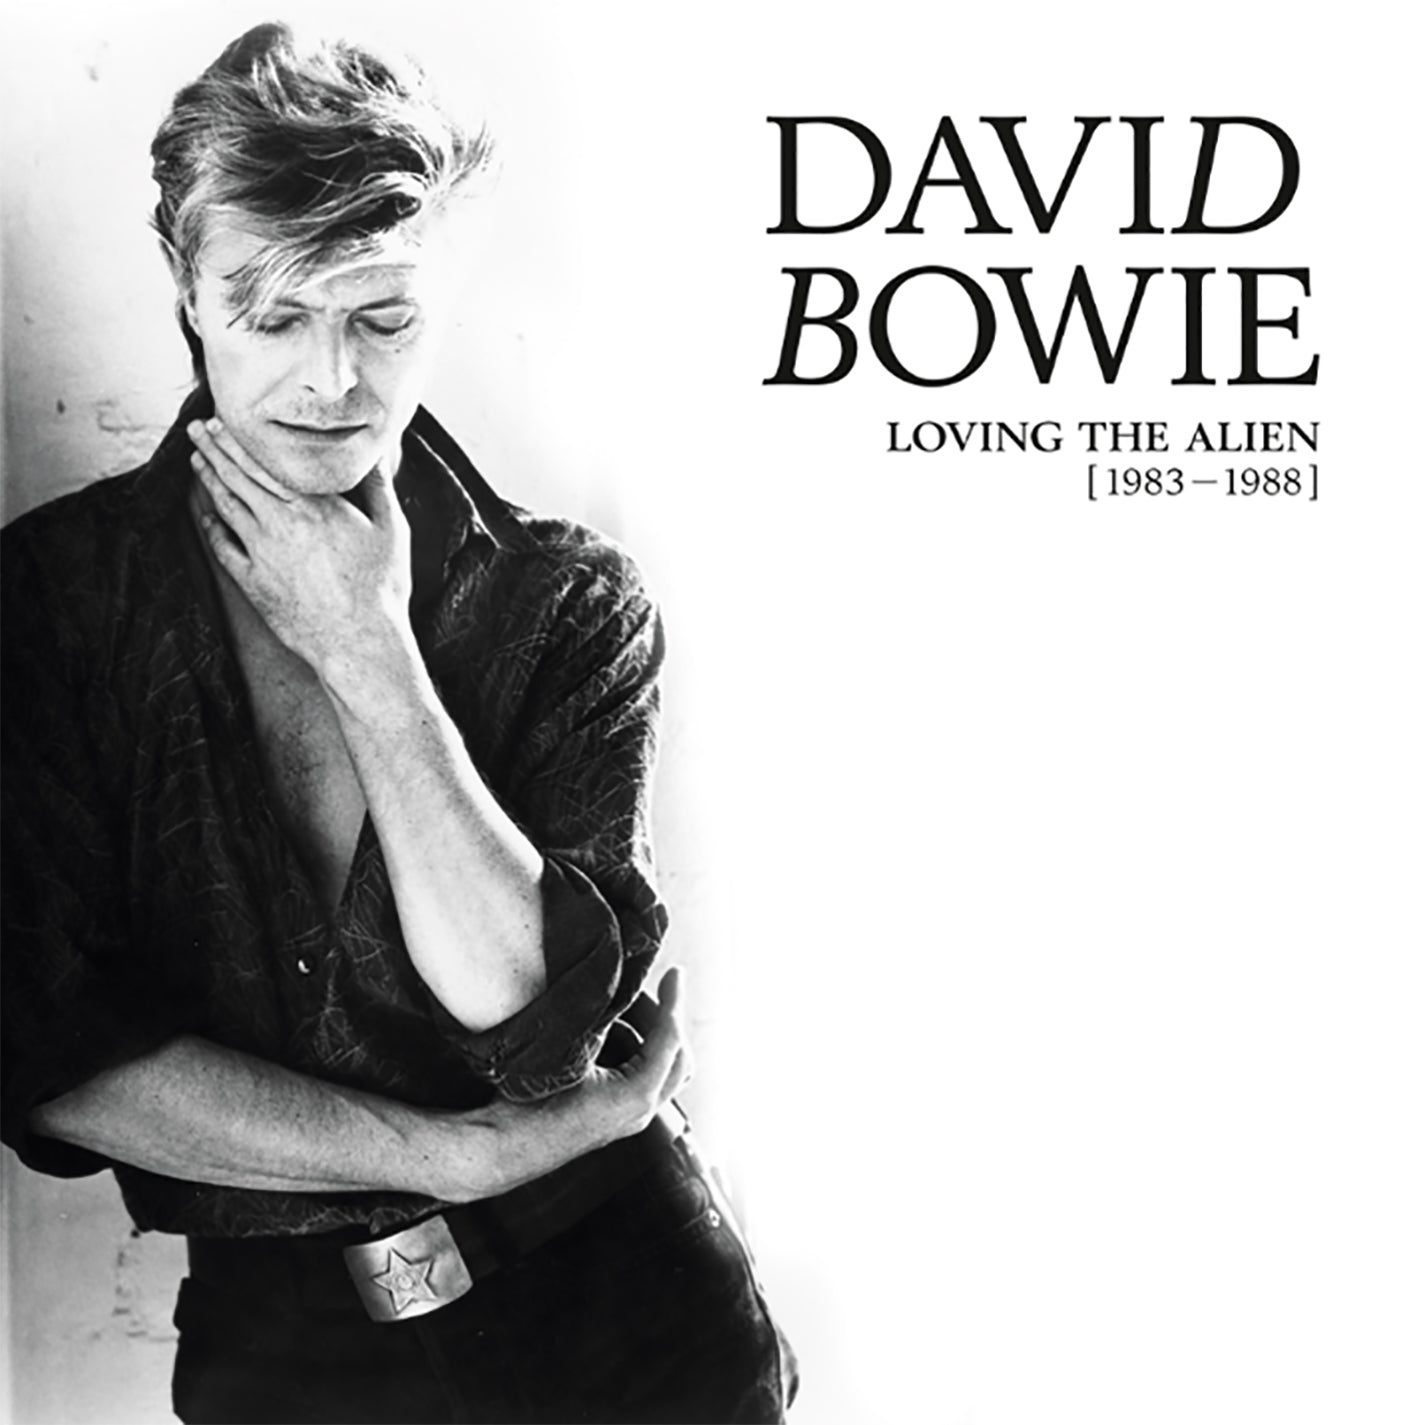 David Bowie - Loving The Alien [1983 - 1988] [15LP Box Set]